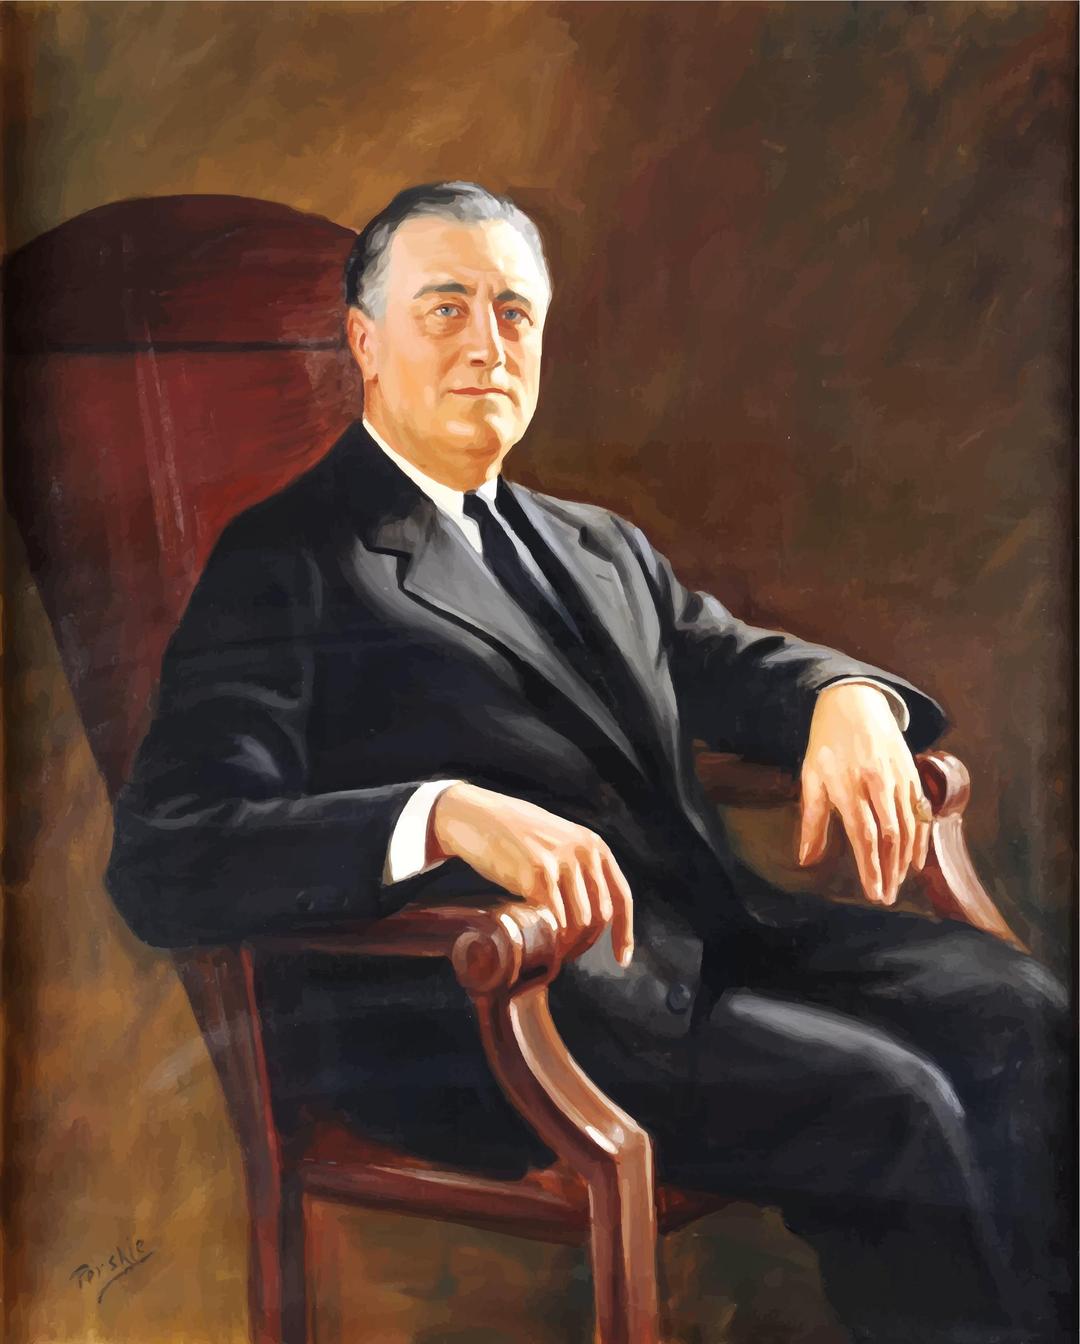 FDR (Franklin Delano Roosevelt) Portrait Painting png transparent